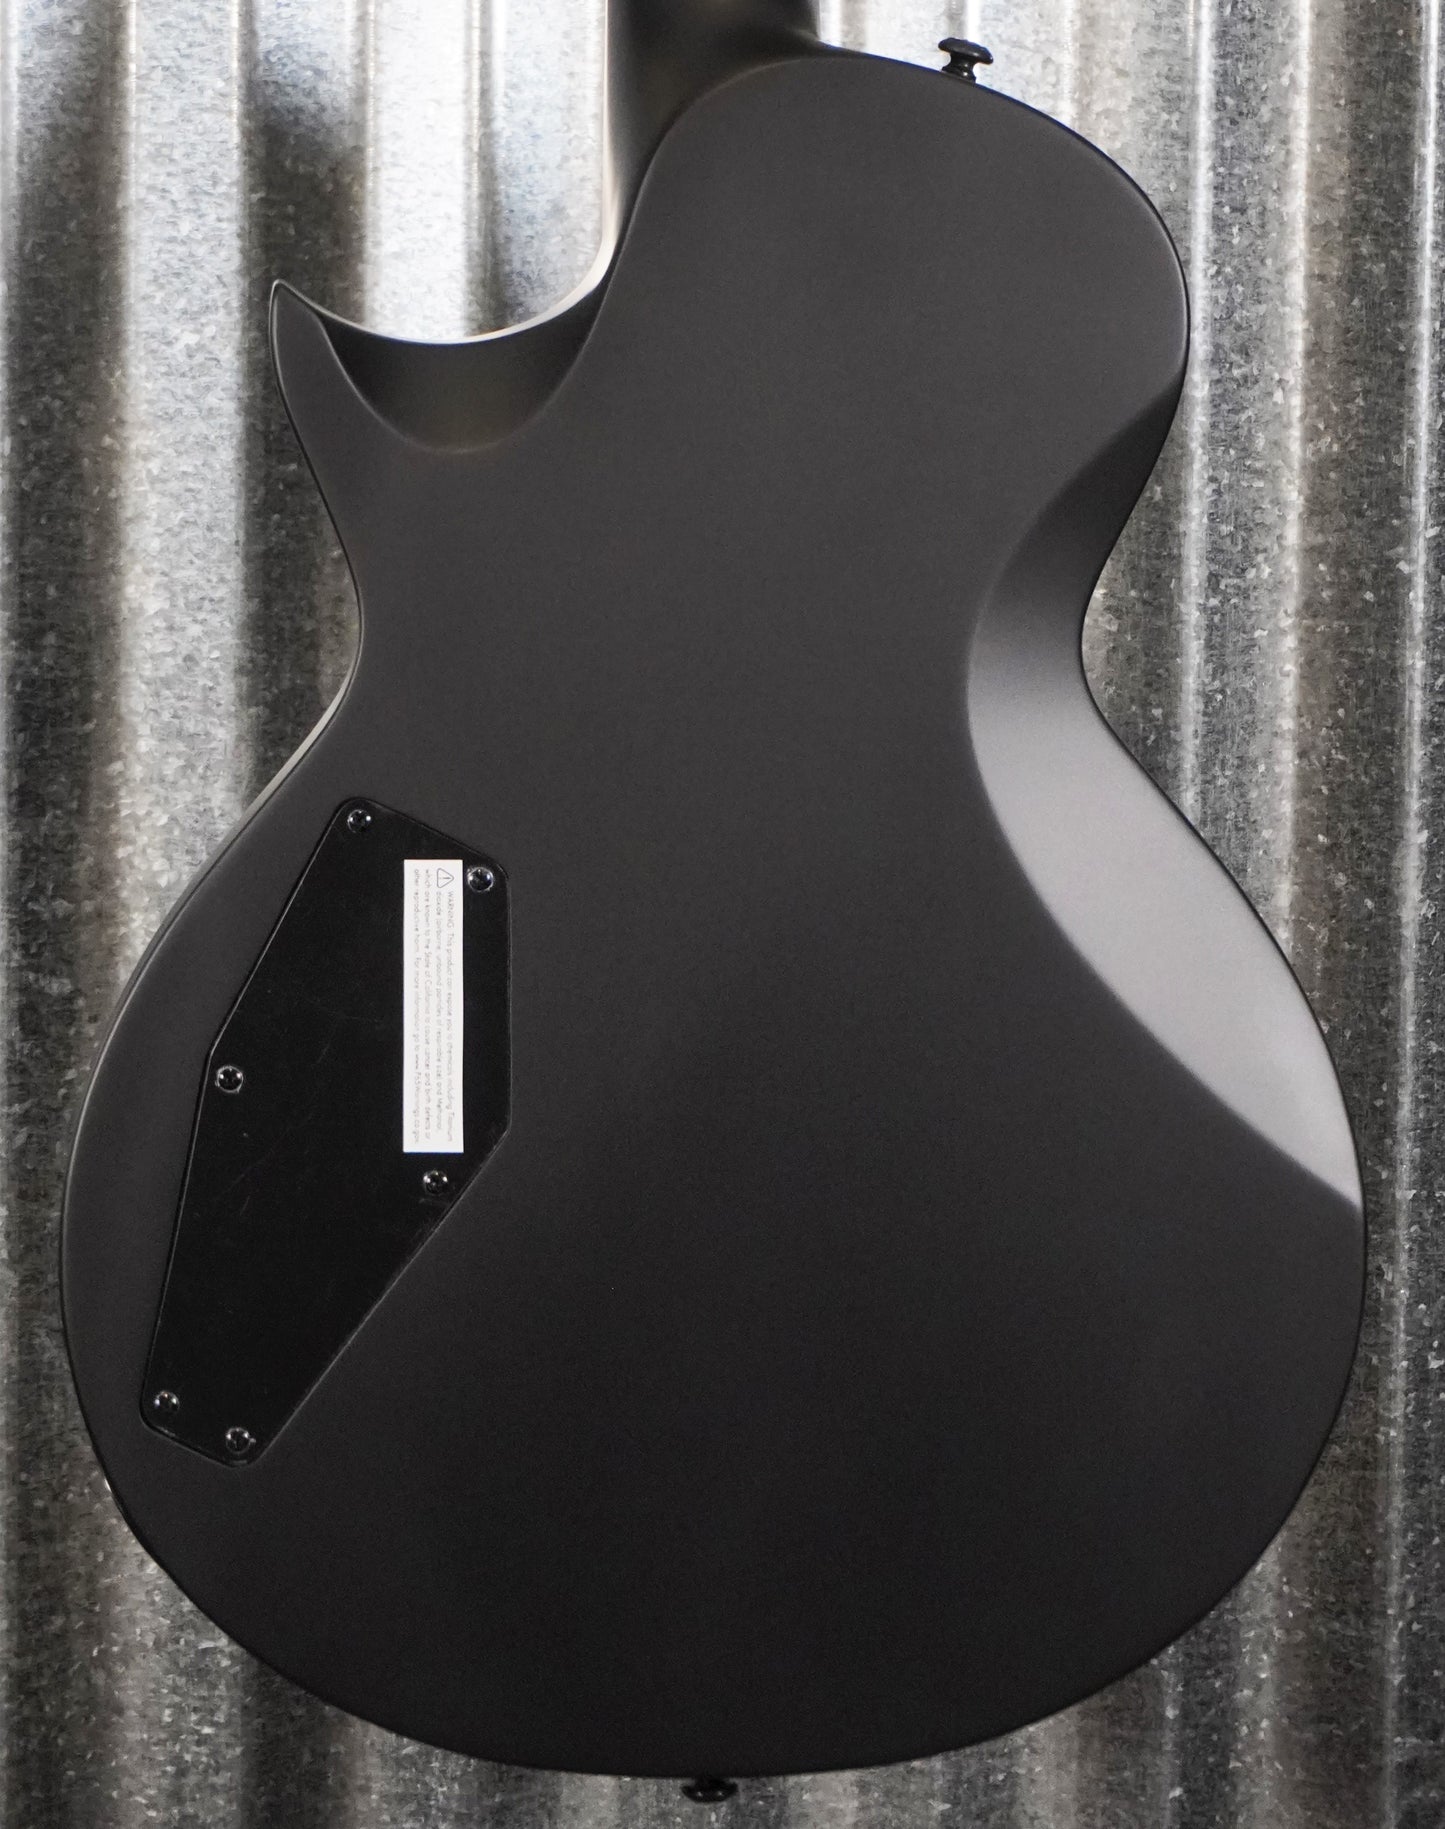 ESP LTD EC Black Metal Guitar LECBKMBLKS #1217